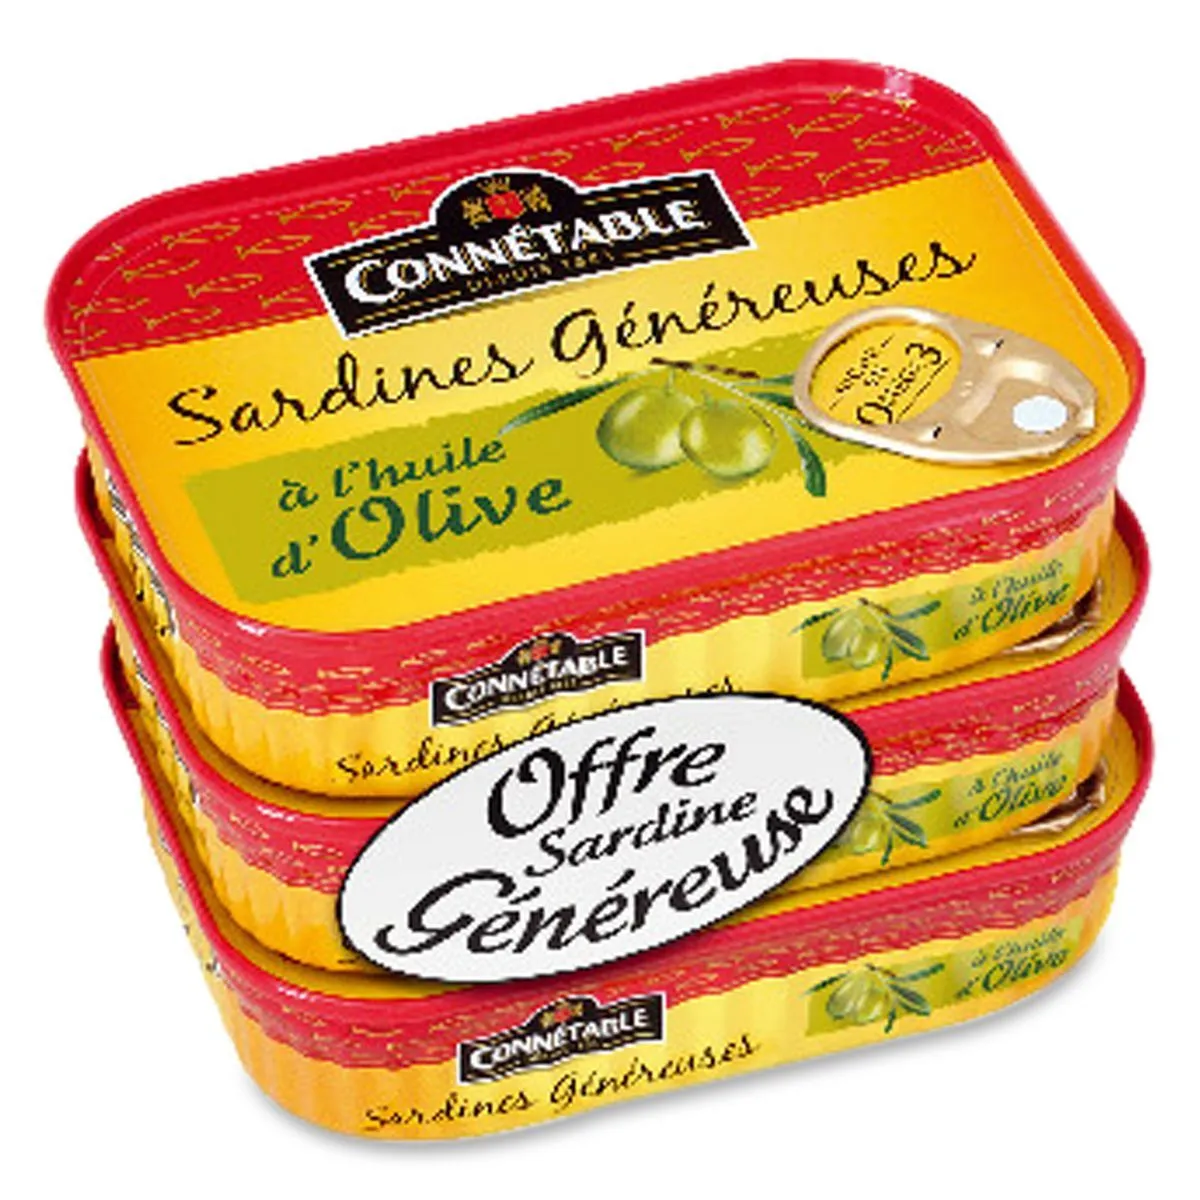 sardines généreuses à l'huile d'olive connétable